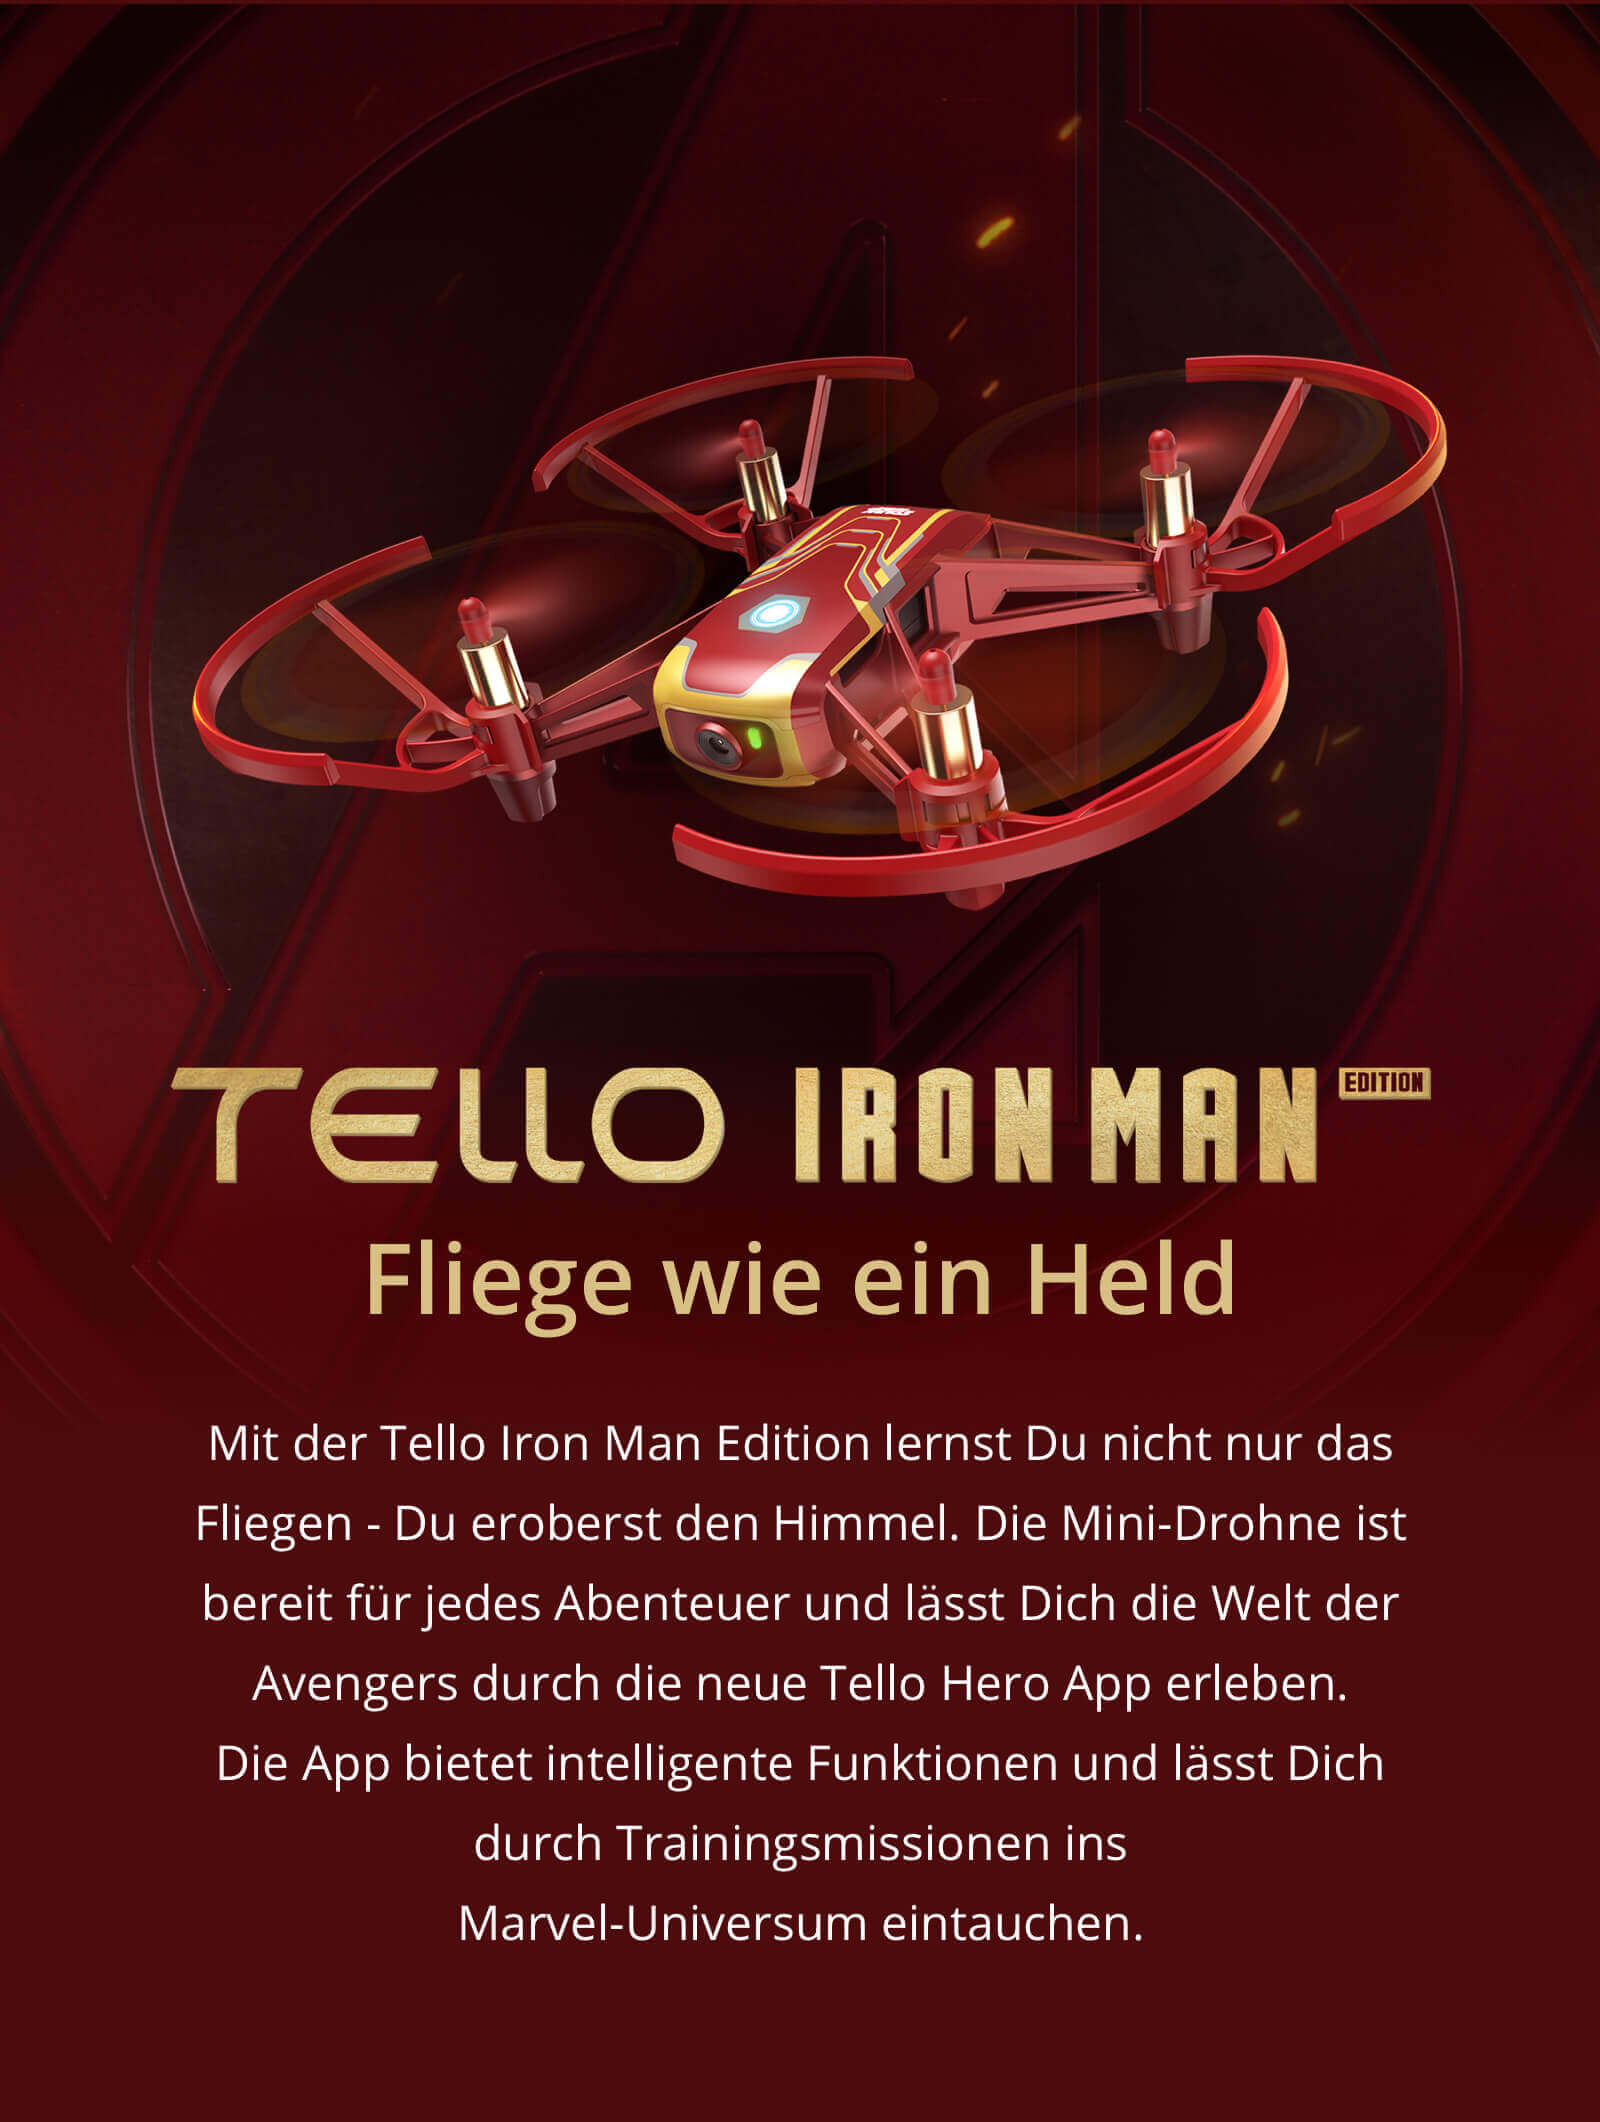 dji-tello-iron-man-edition